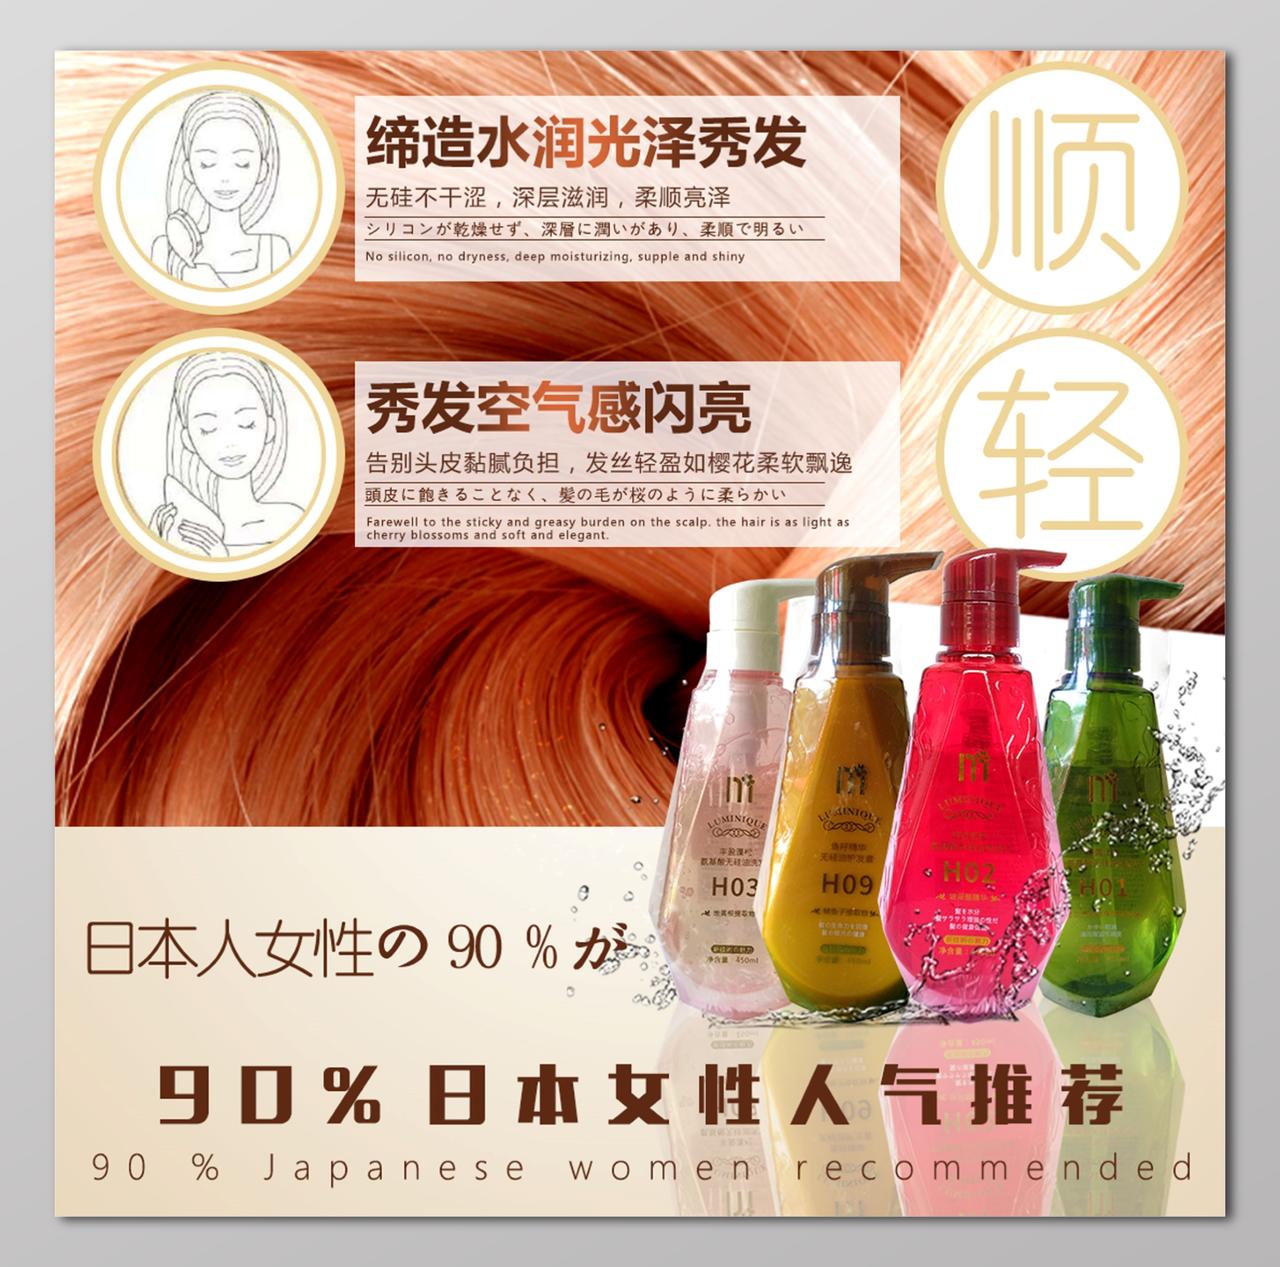 洗发水日本女性人气推荐海报设计 